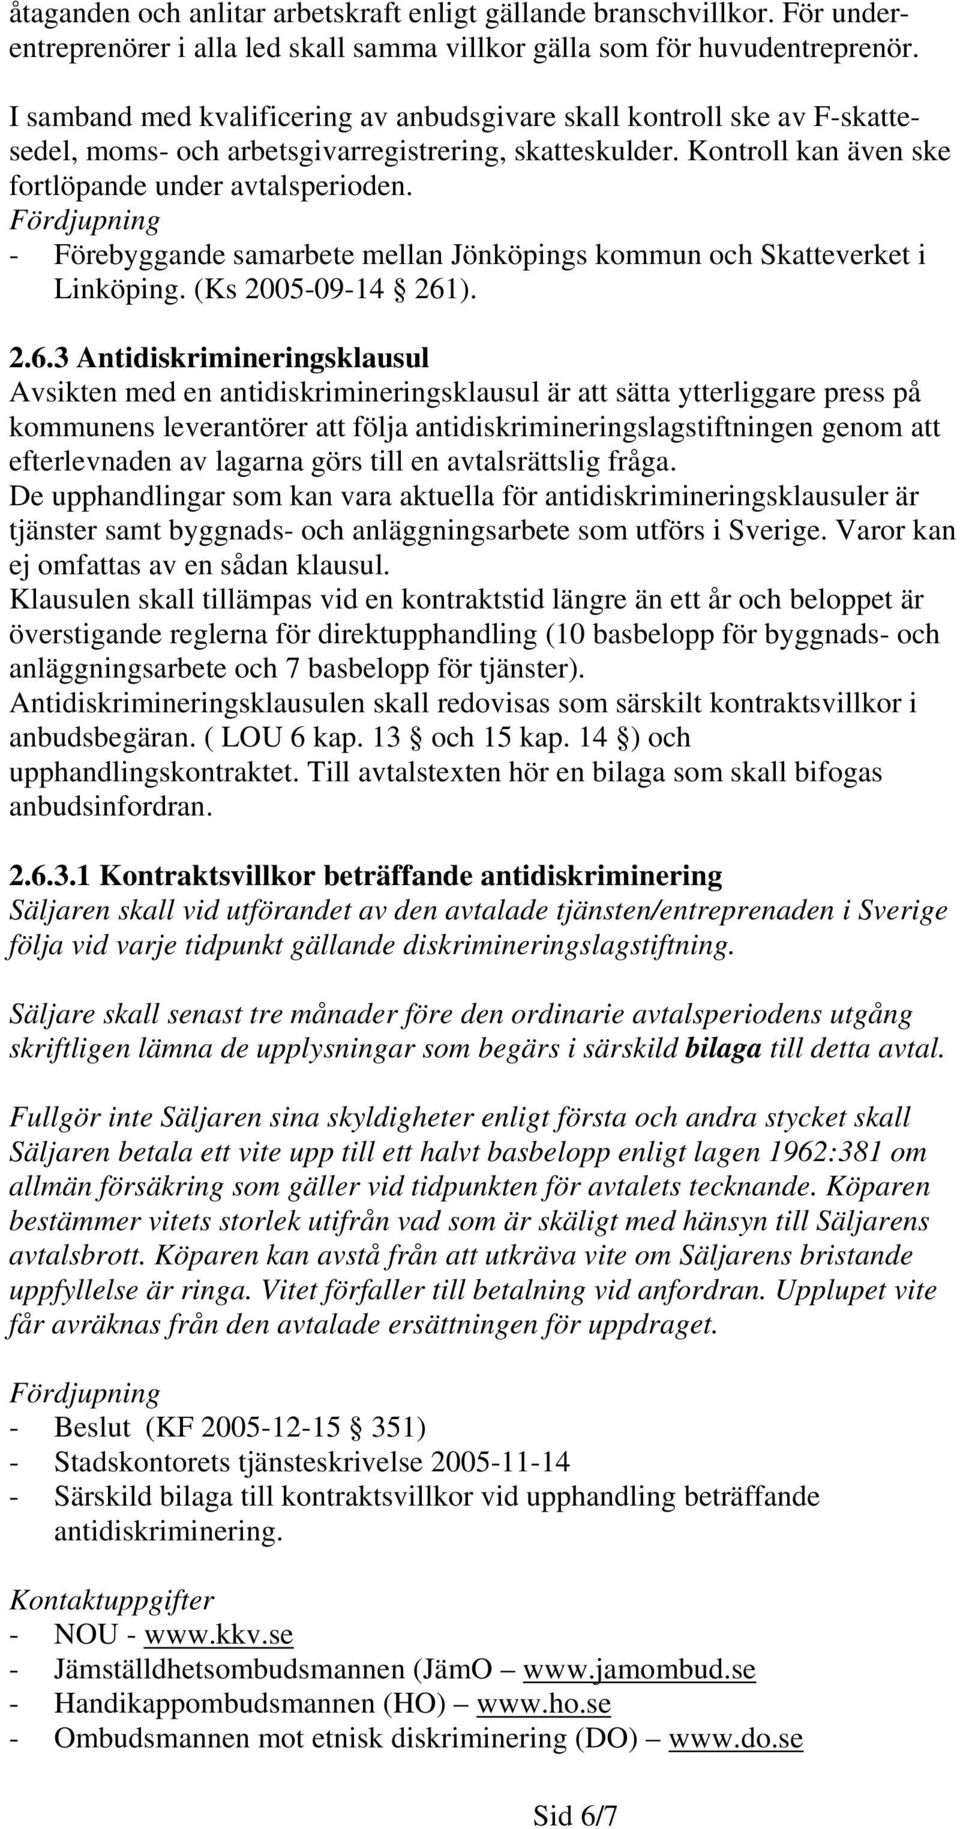 - Förebyggande samarbete mellan Jönköpings kommun och Skatteverket i Linköping. (Ks 2005-09-14 261